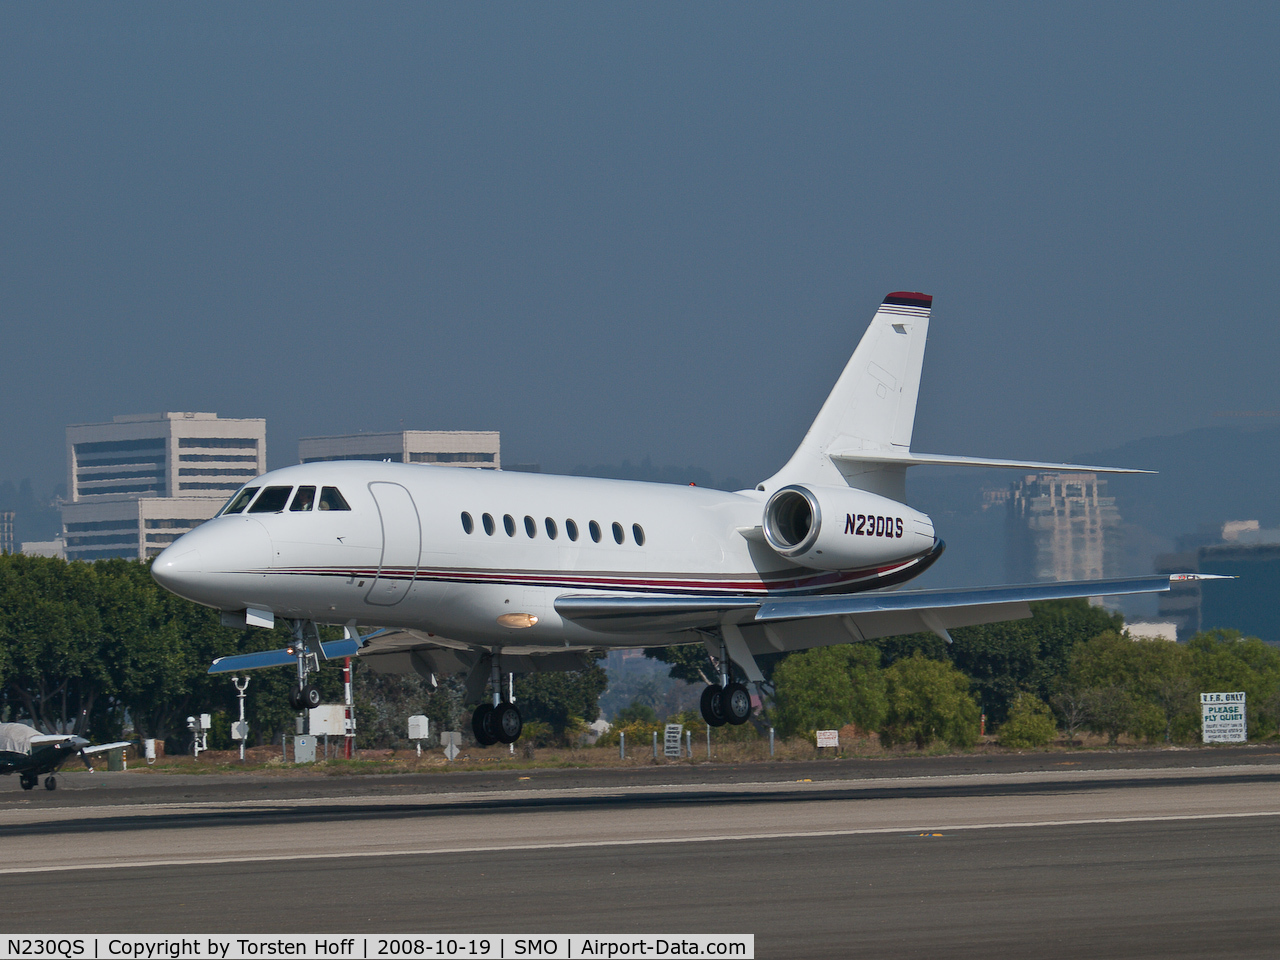 N230QS, 2005 Dassault Falcon 2000EX C/N 59, N230QS arriving on RWY 21